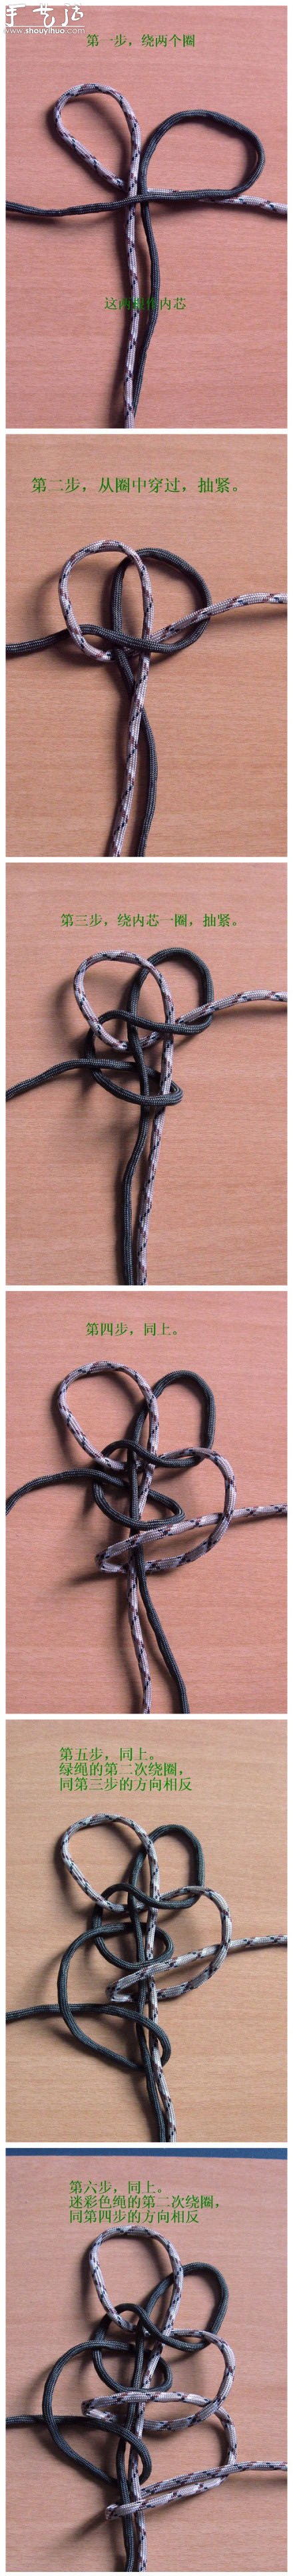 绳子手工编织漂亮手链的方法教程